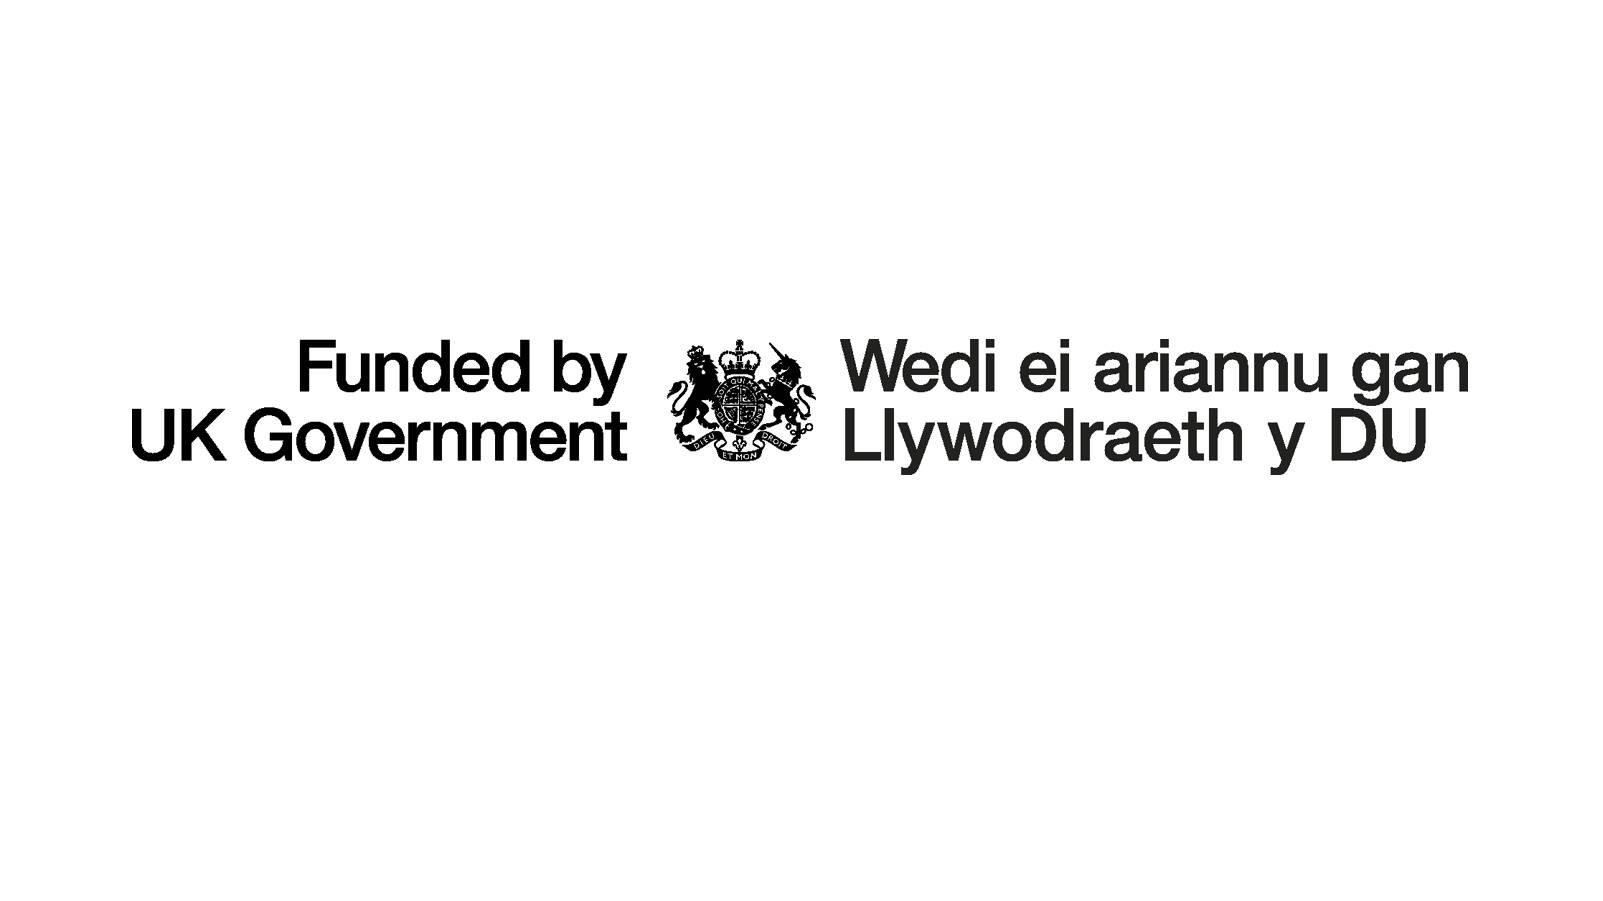 Logo "Wedi ei arianu gan lywodraeth y DU"